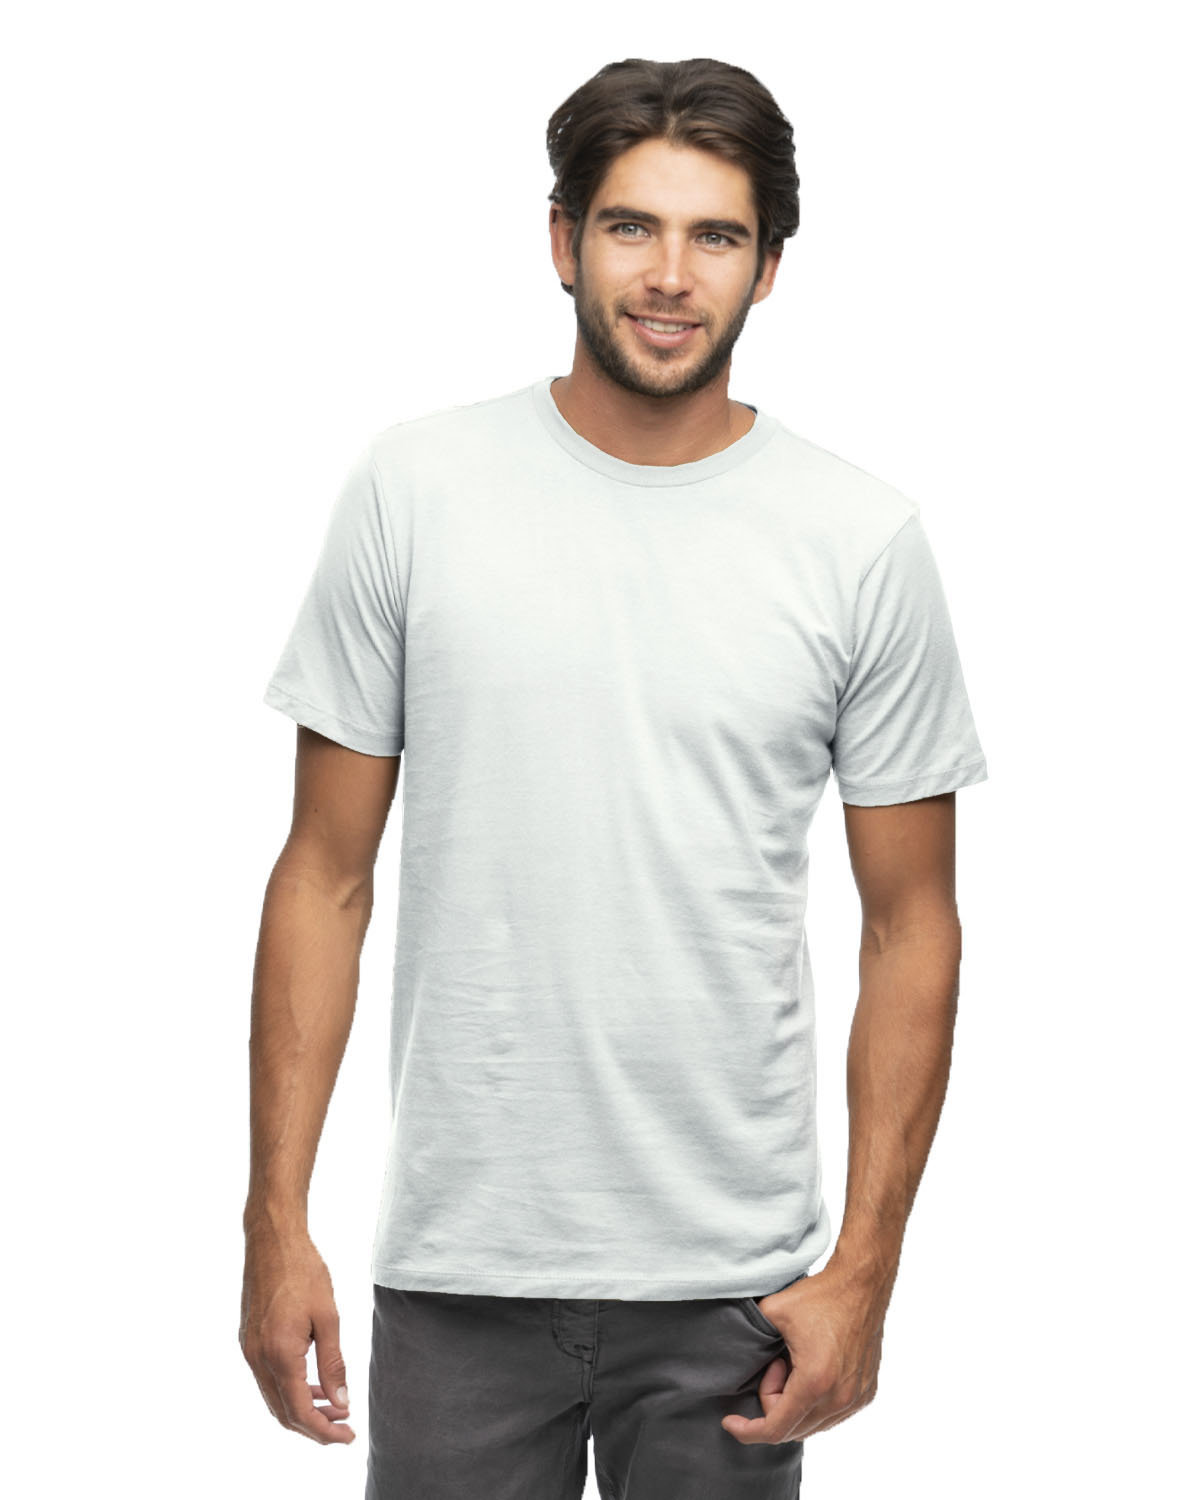 Unisex Eco Fashion T-Shirt-